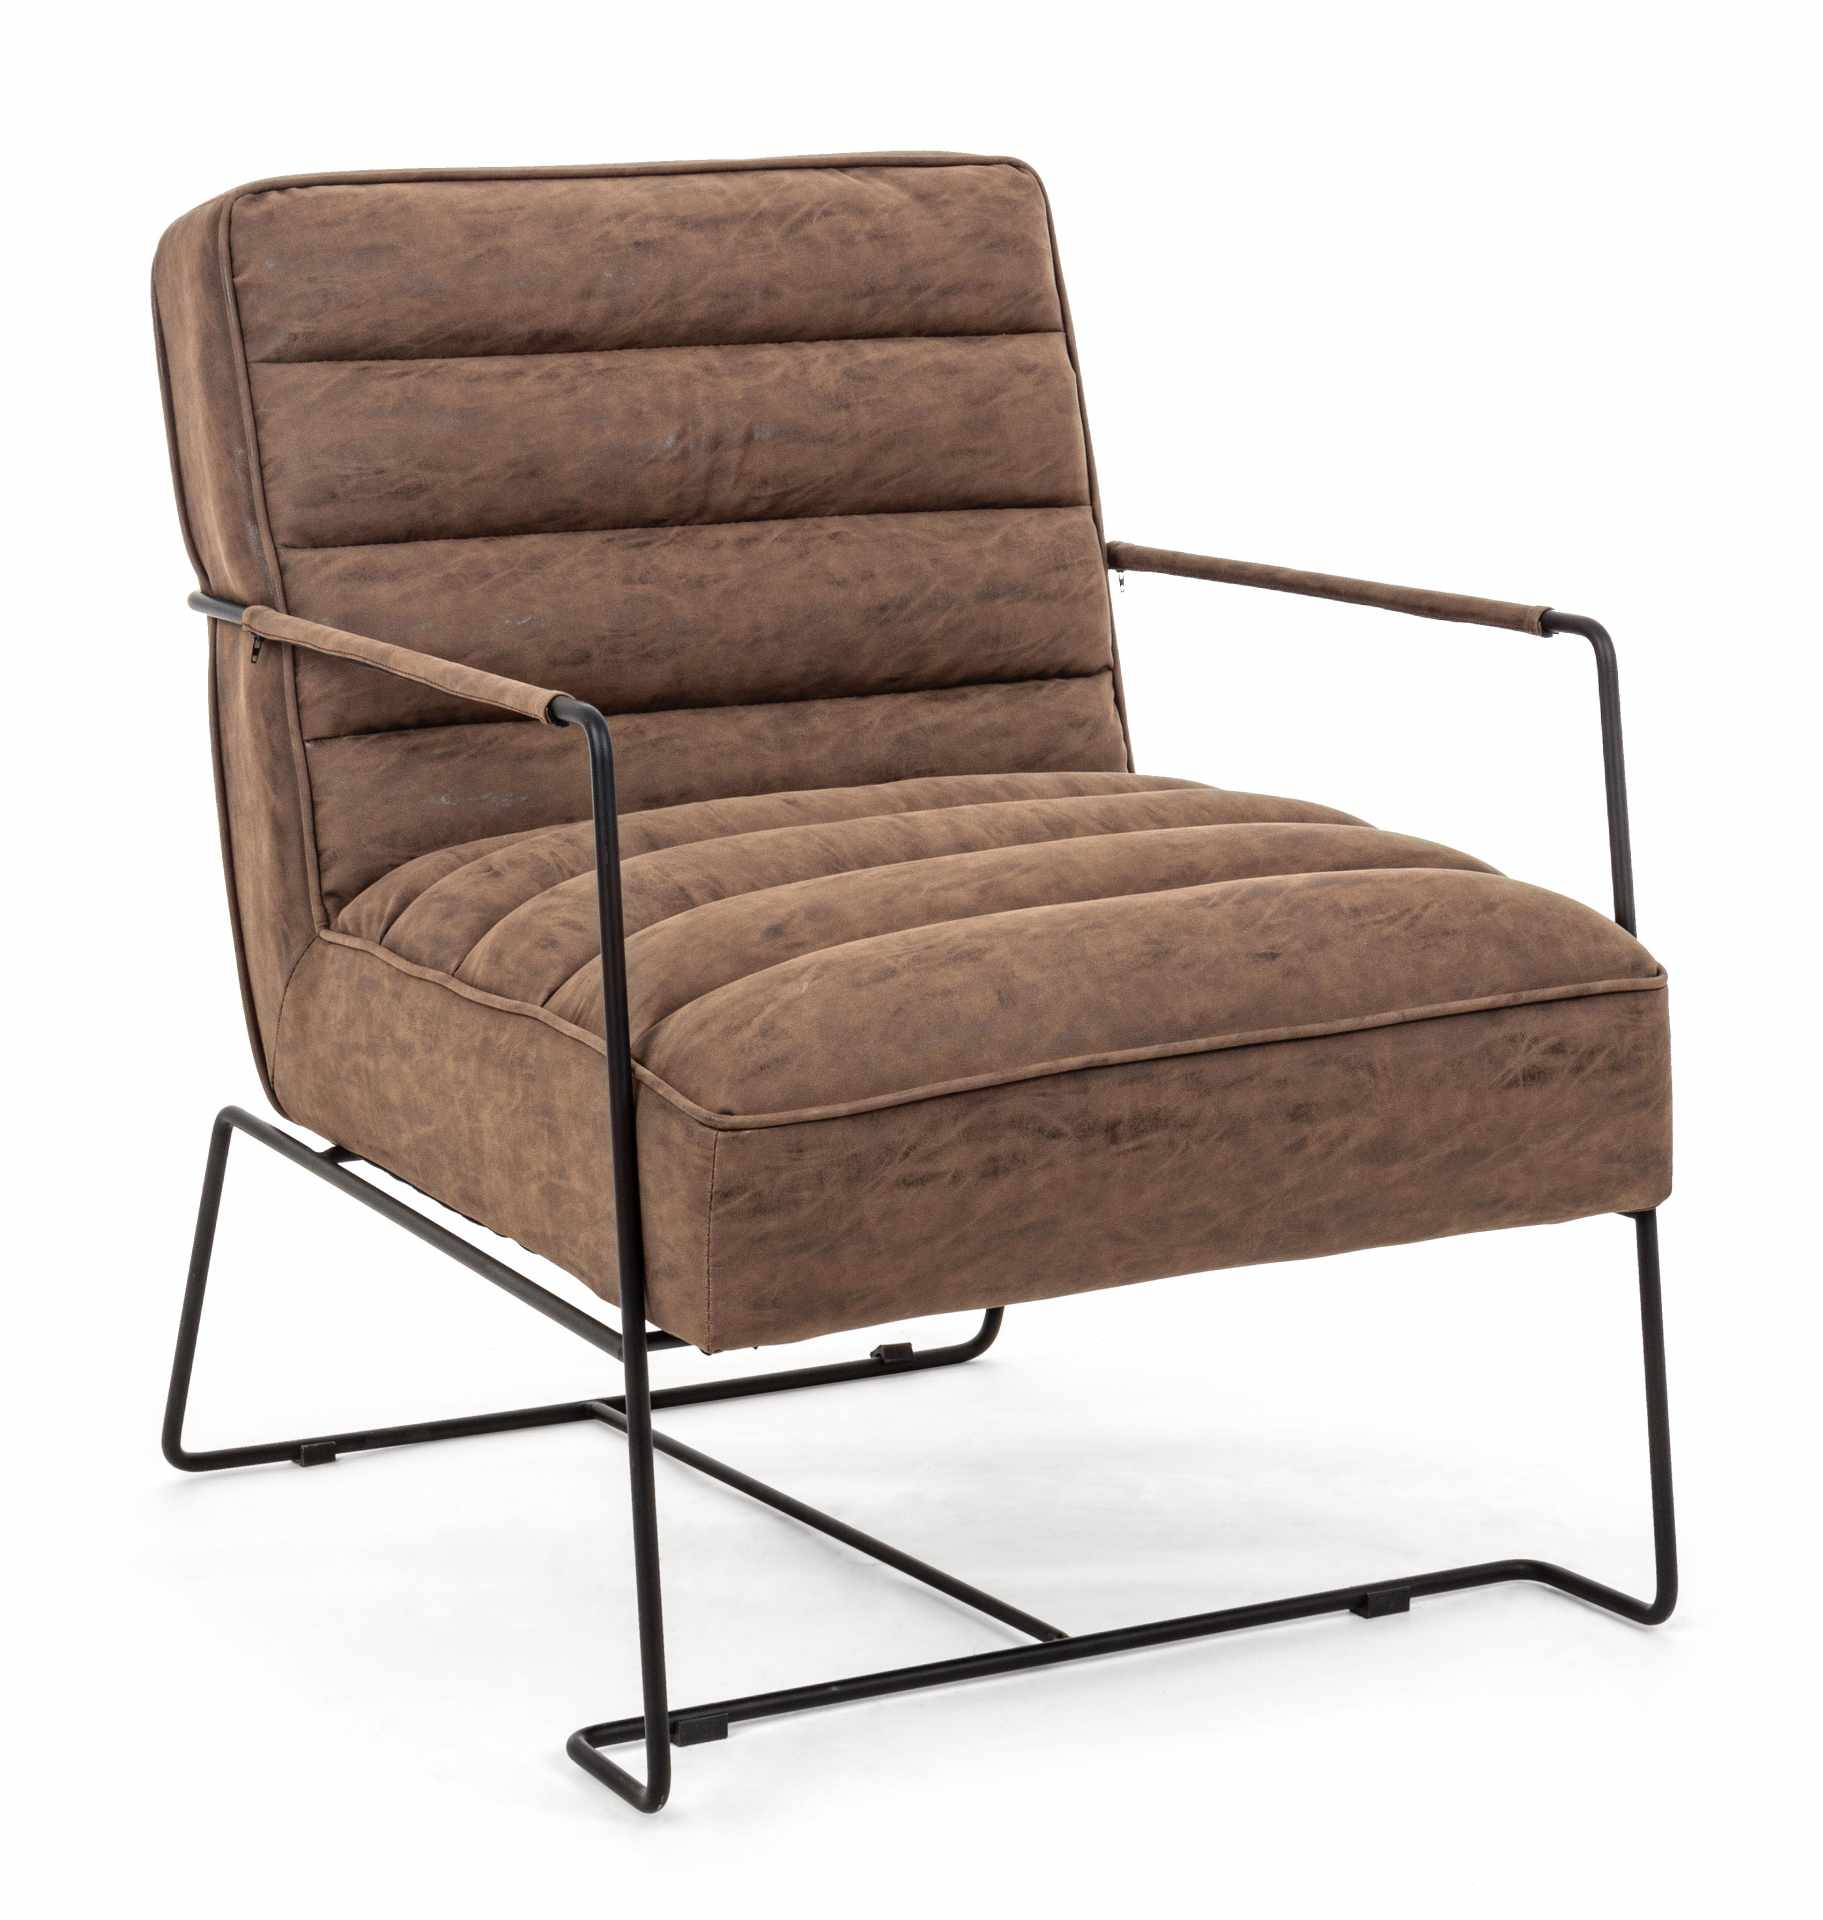 Der Sessel Brianna überzeugt mit seinem klassischen Design. Gefertigt wurde er aus Kunstleder, welches einen braunen Farbton besitzt. Das Gestell ist aus Metall und hat eine schwarze Farbe. Der Sessel besitzt eine Sitzhöhe von 45 cm. Die Breite beträgt 63